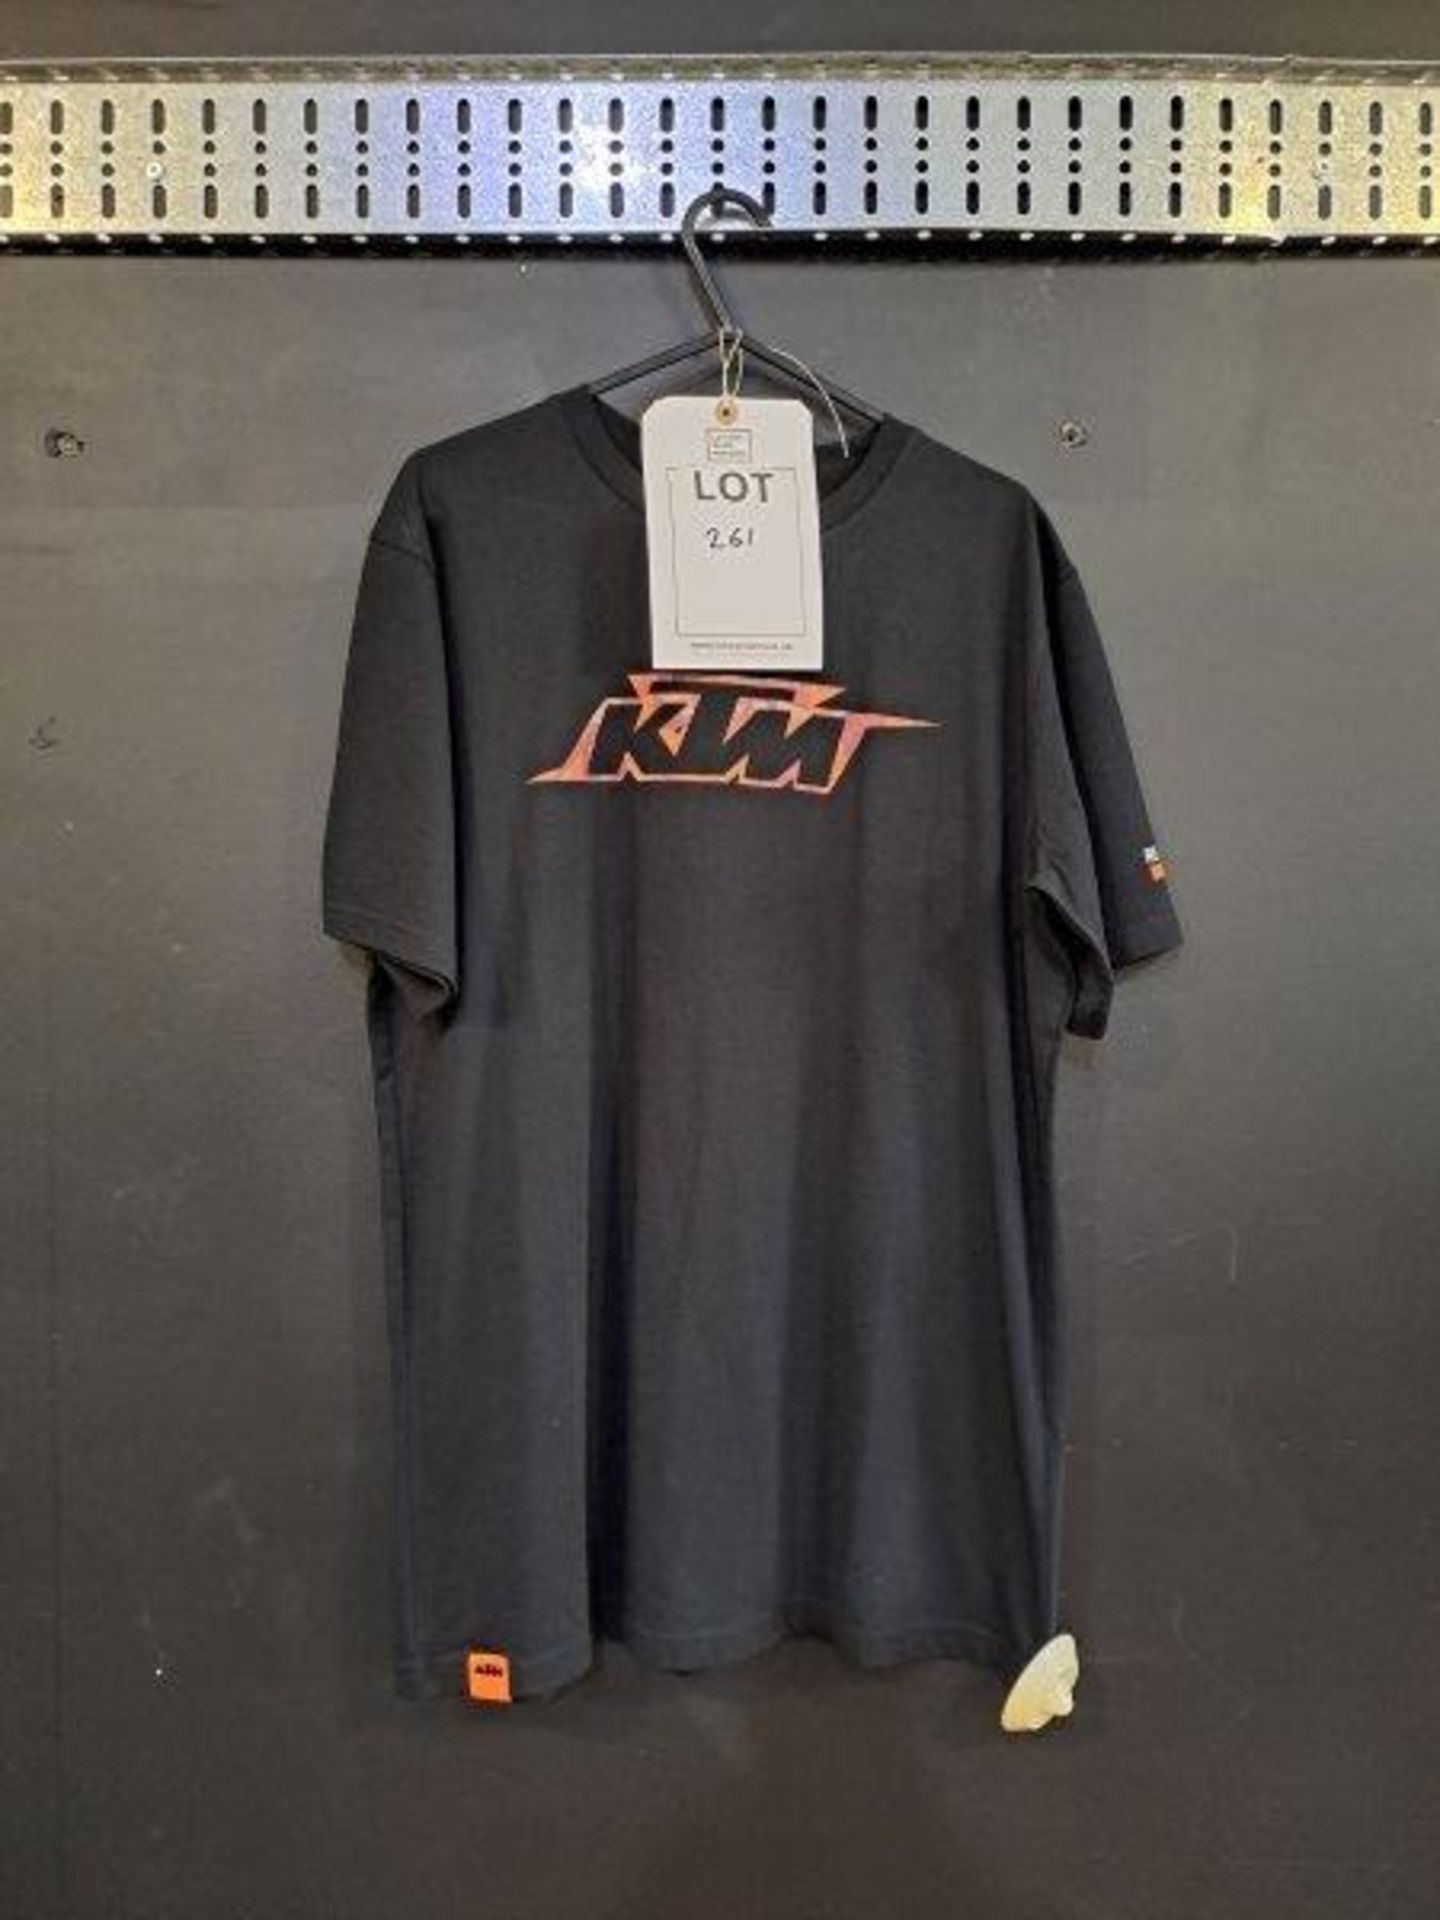 KTM Fashion Clothing - Image 4 of 9